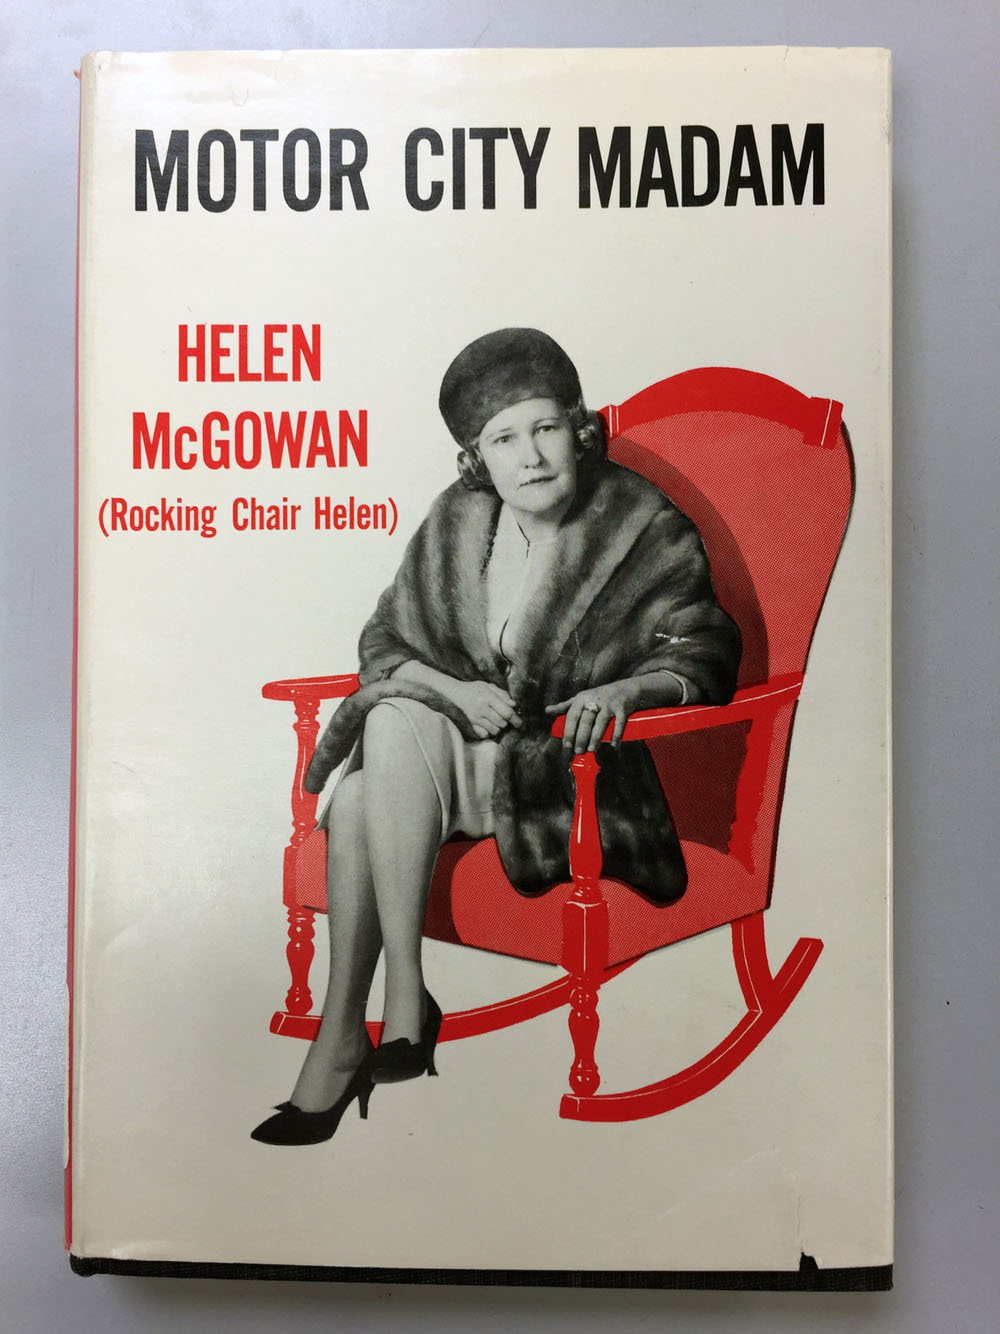 1987 : Motor City Madam Dies